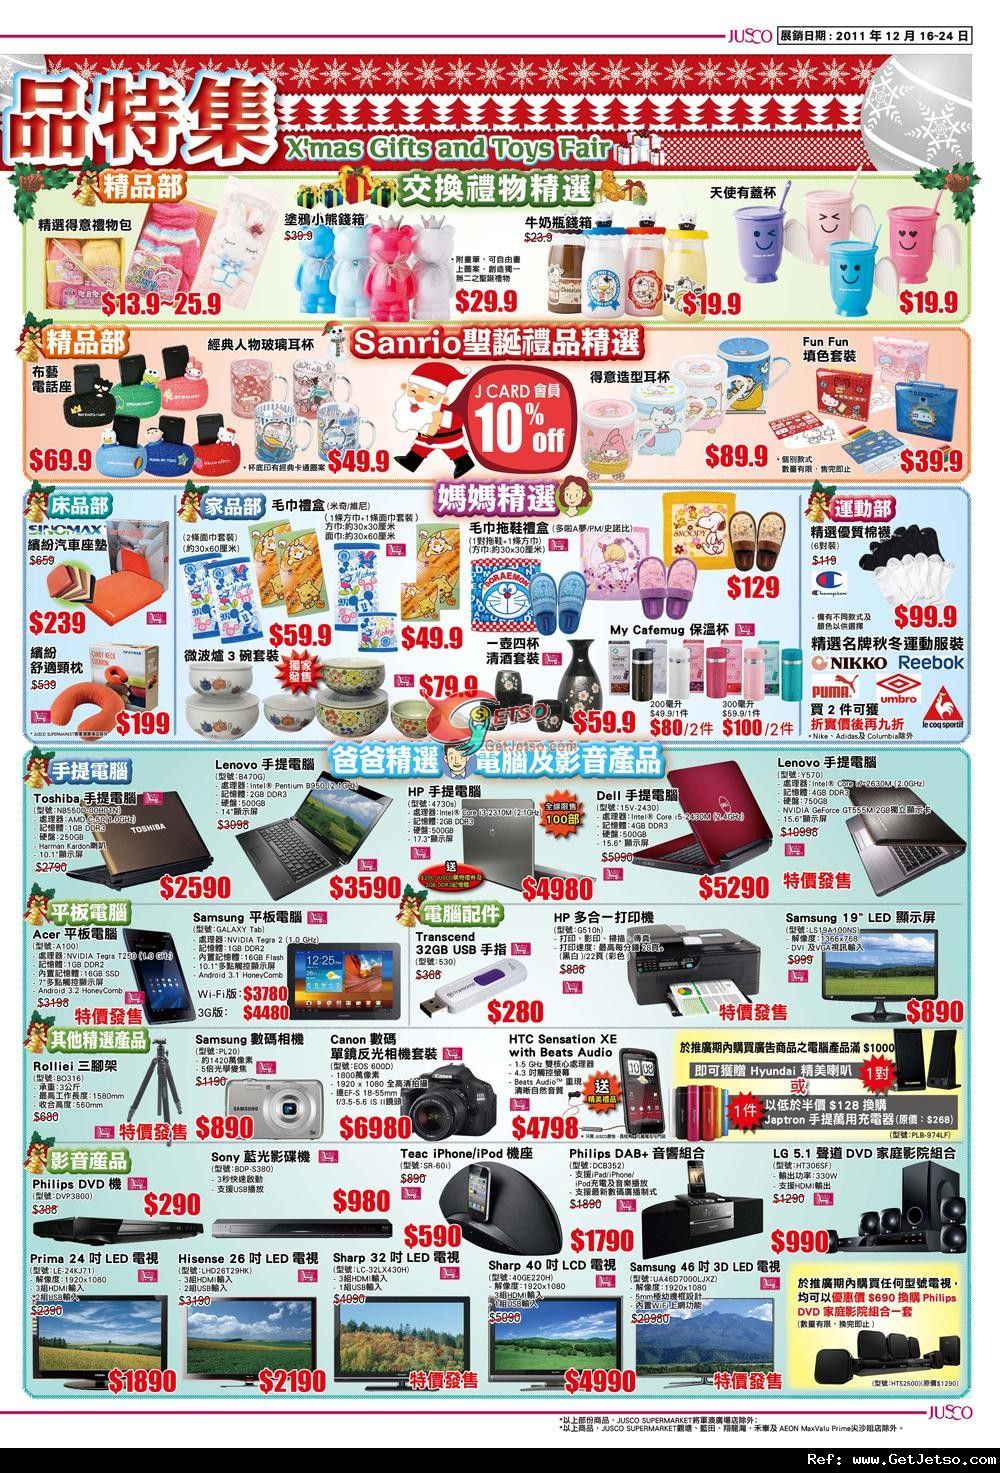 吉之島聖誕禮品及派對美食購買優惠(至11年12月24日)圖片3